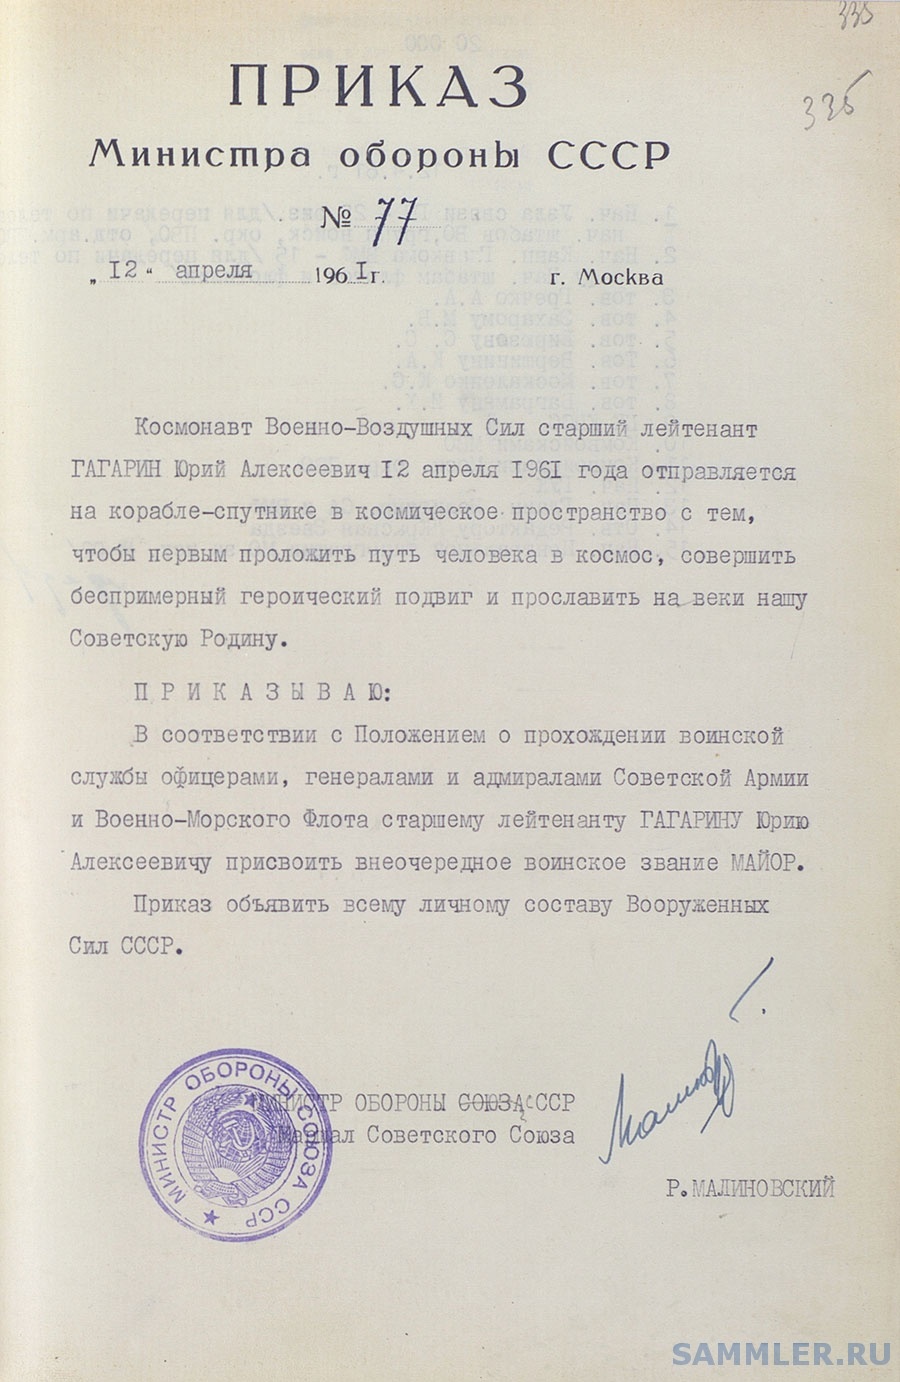 Приказ МО СССР от 12.04.1961 № 77 - присвоение звания Гагарину.jpg